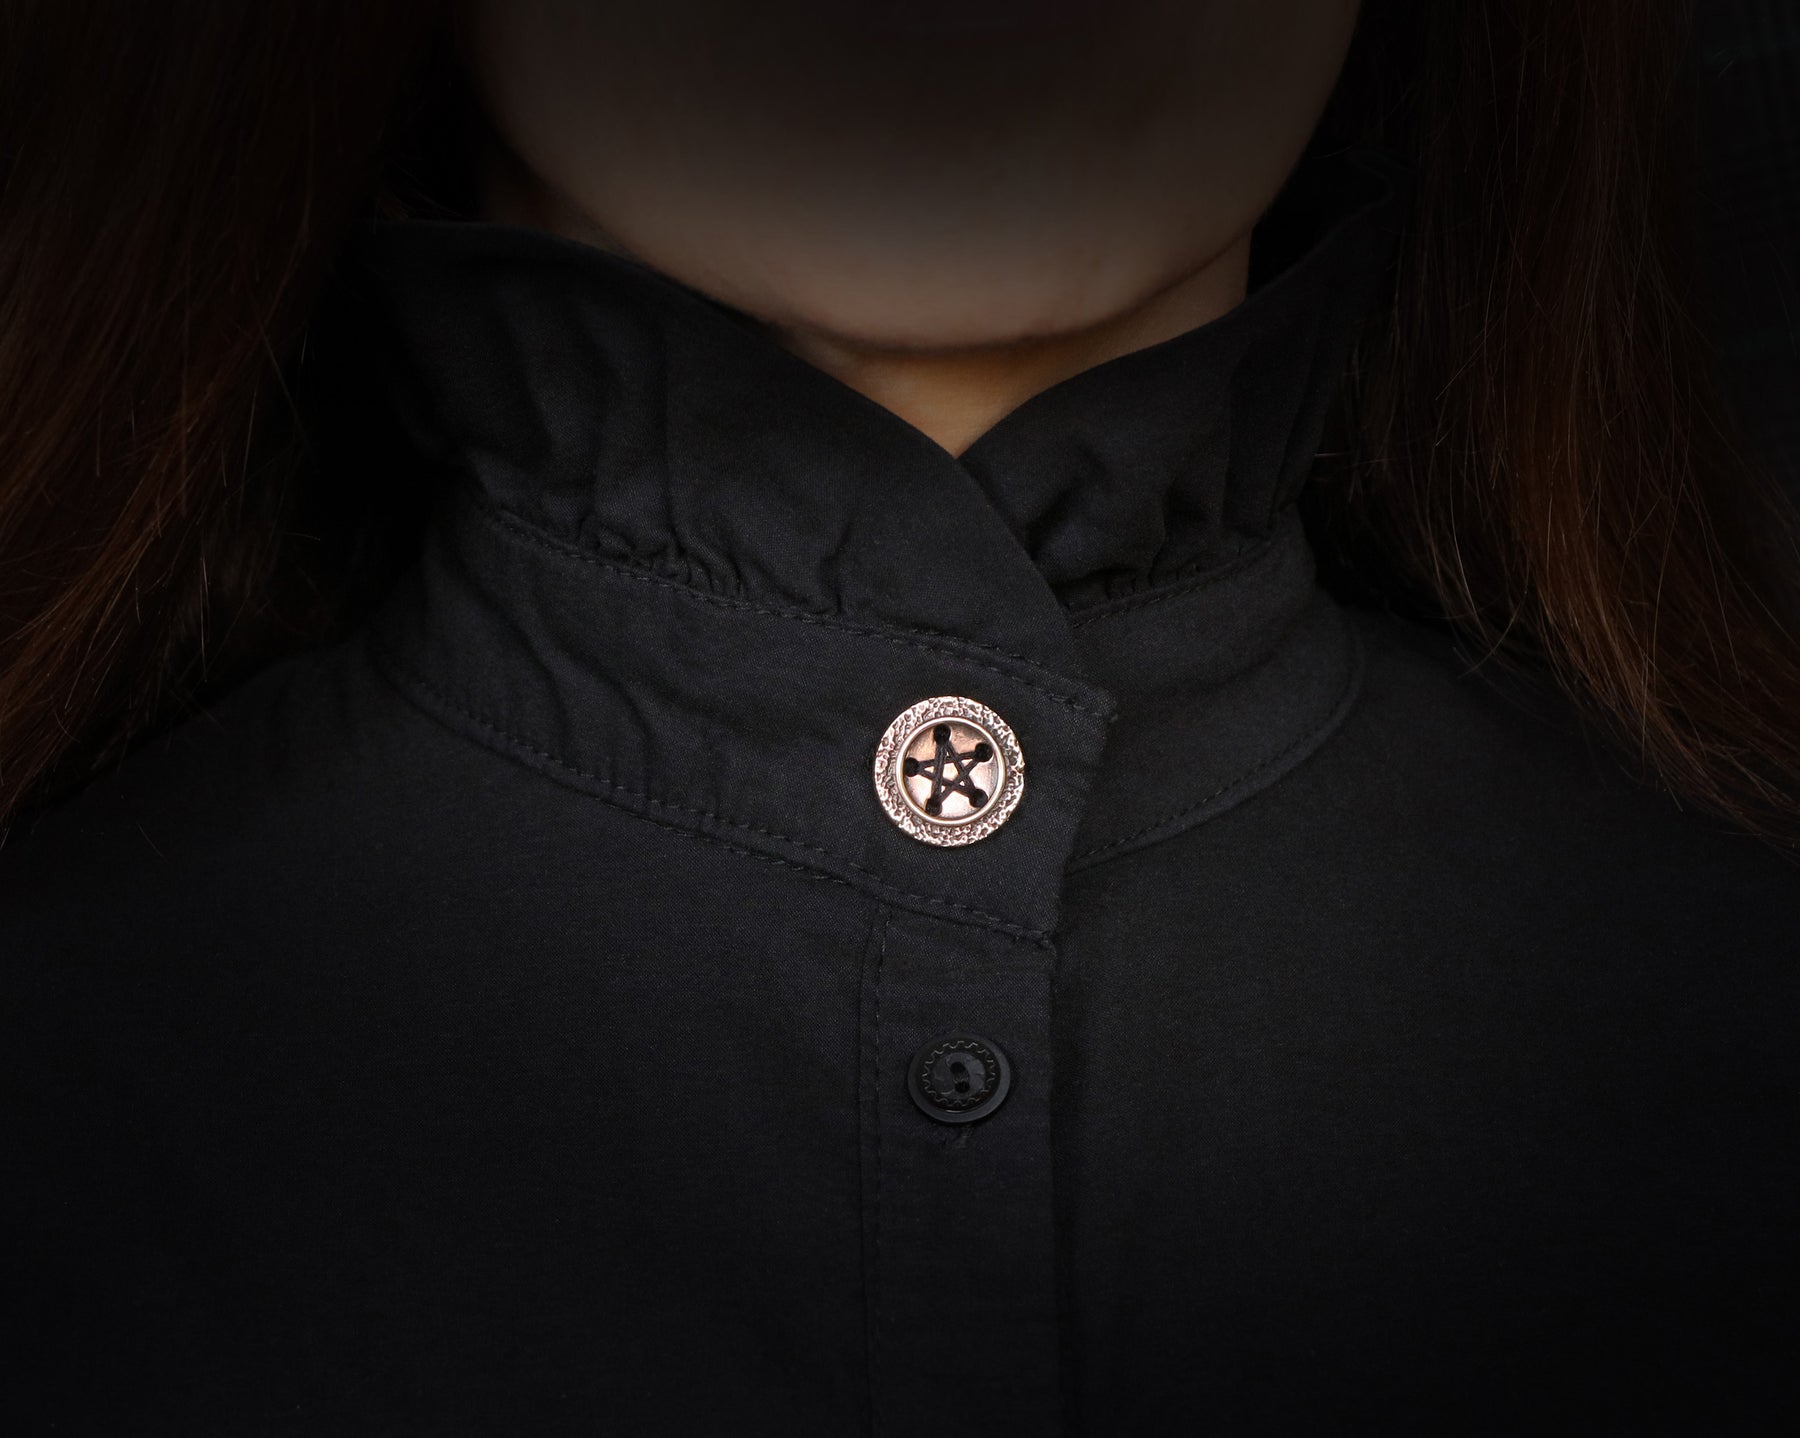 bronze pentagram button sewed on a shirt